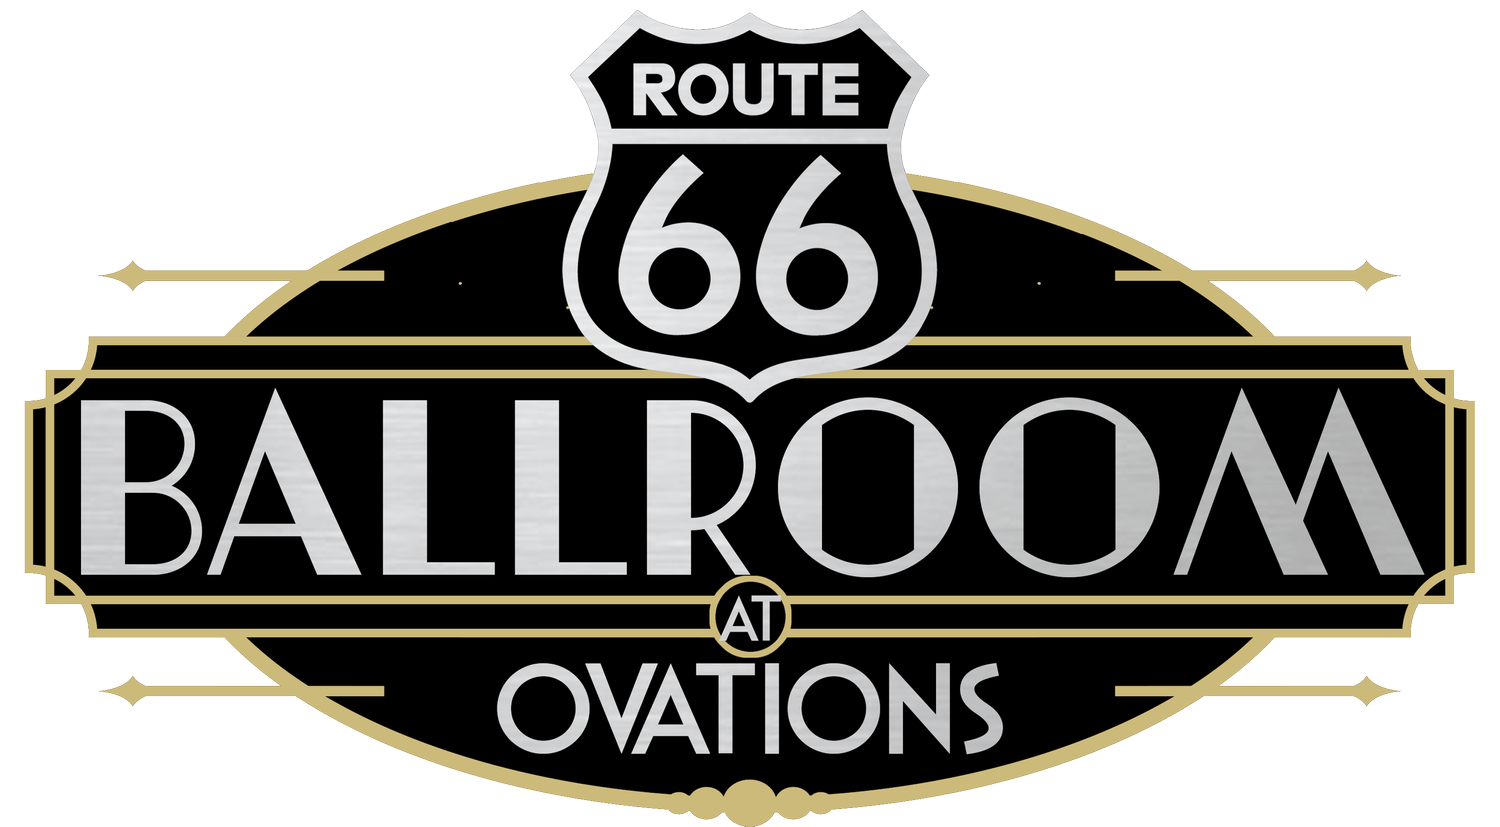 Route 66 Ballroom